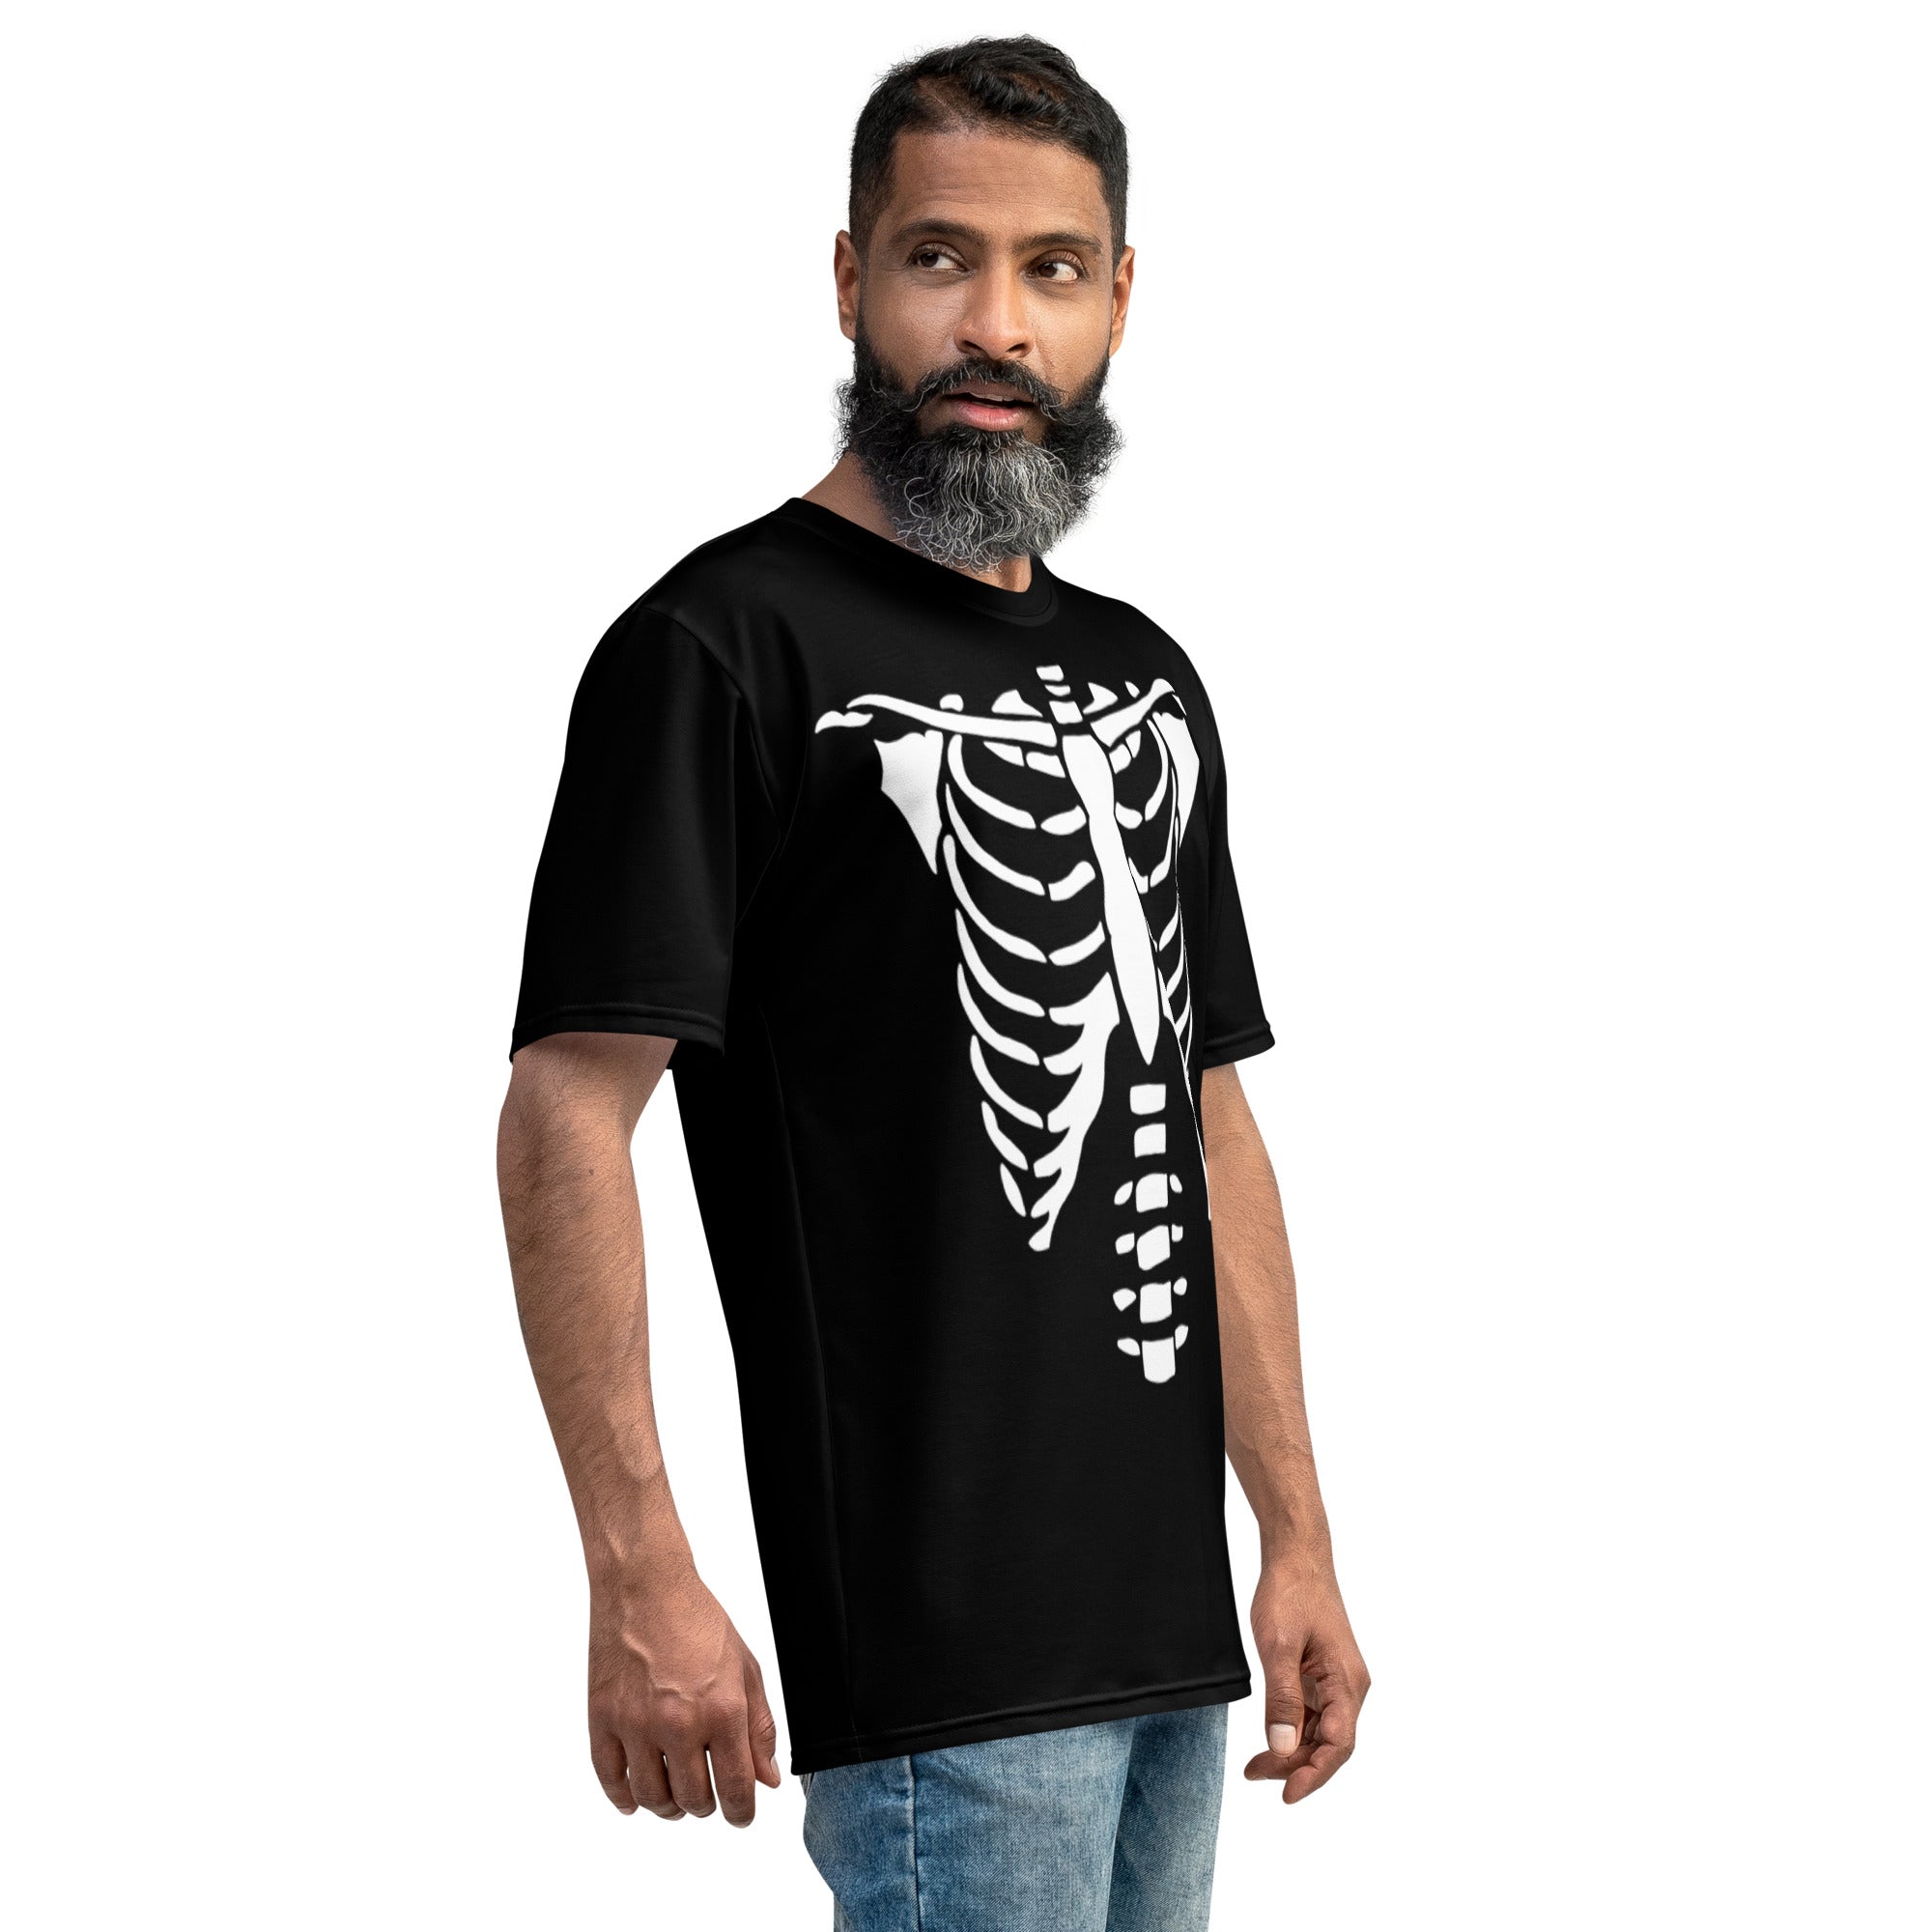 Skeleton Bones Unisex T-shirt